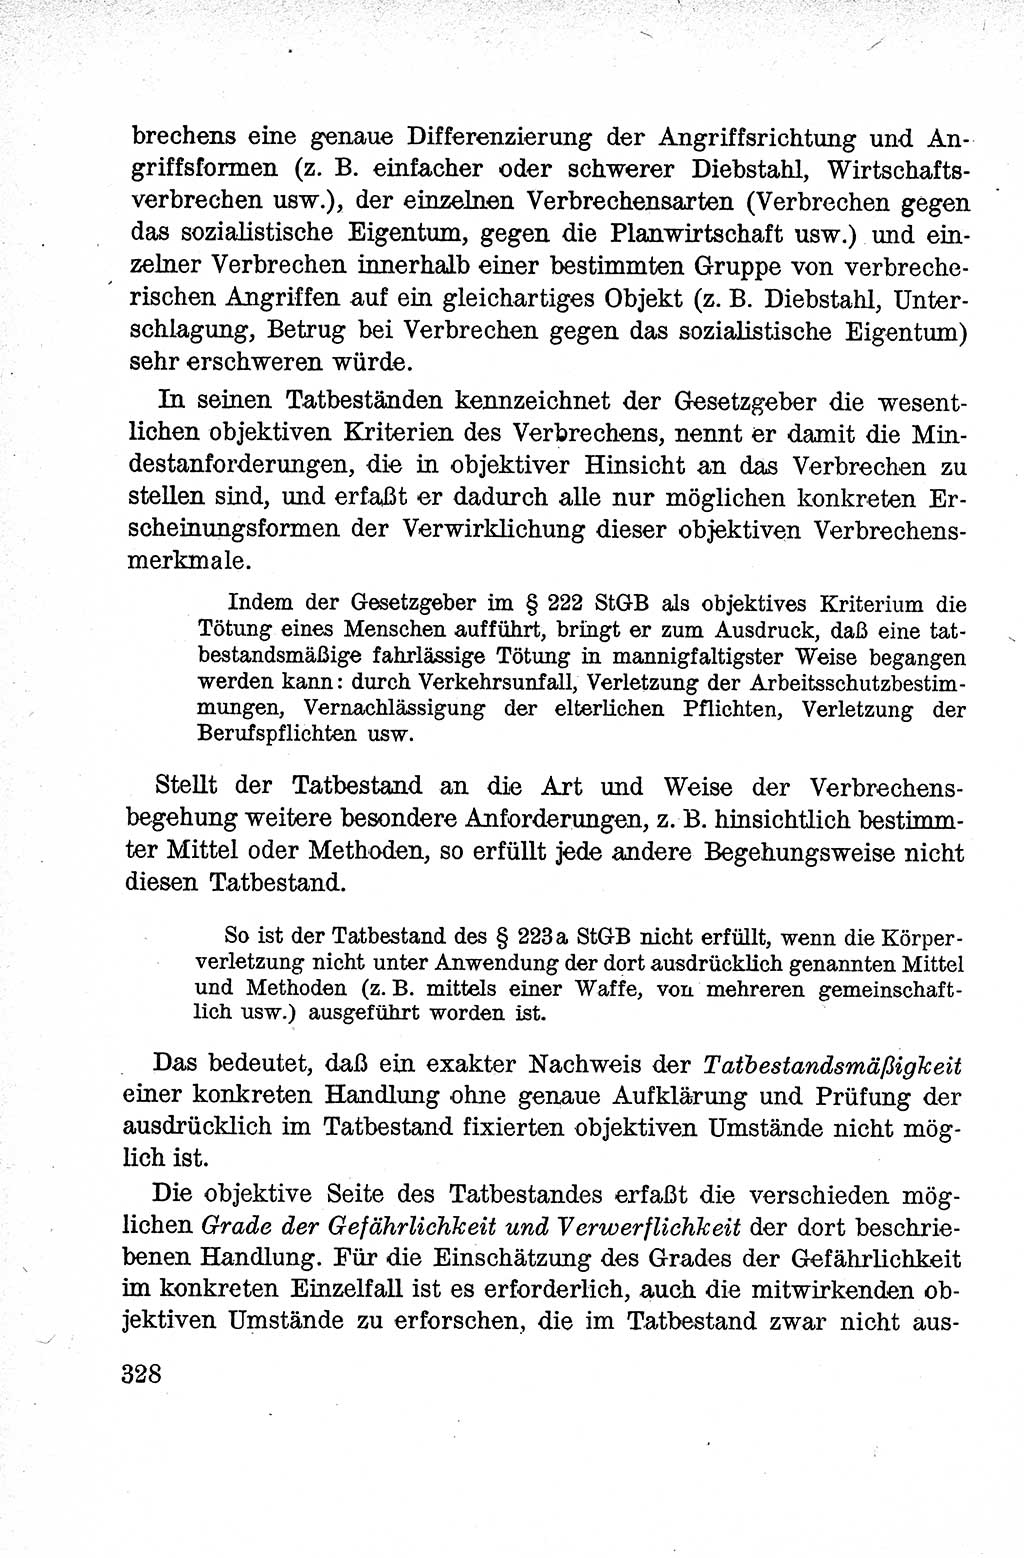 Lehrbuch des Strafrechts der Deutschen Demokratischen Republik (DDR), Allgemeiner Teil 1959, Seite 328 (Lb. Strafr. DDR AT 1959, S. 328)